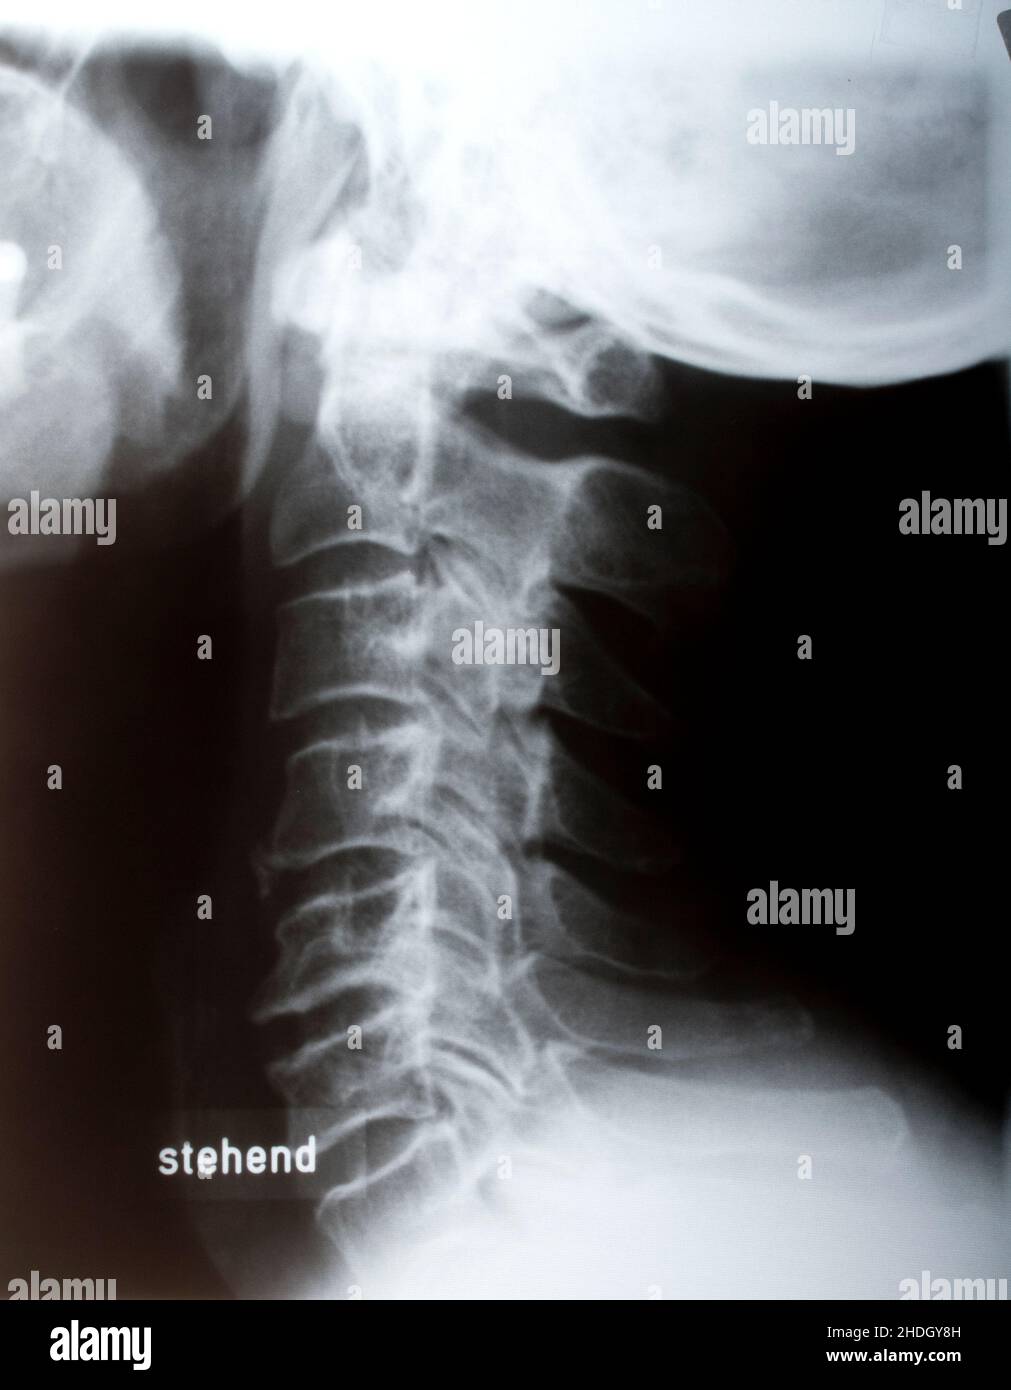 immagine radiologica, lesione, colonna vertebrale umana, colonna cervicale, radiologia, raggi x, raggi x, raggi x, lesioni, spine umane, spine cervicali Foto Stock